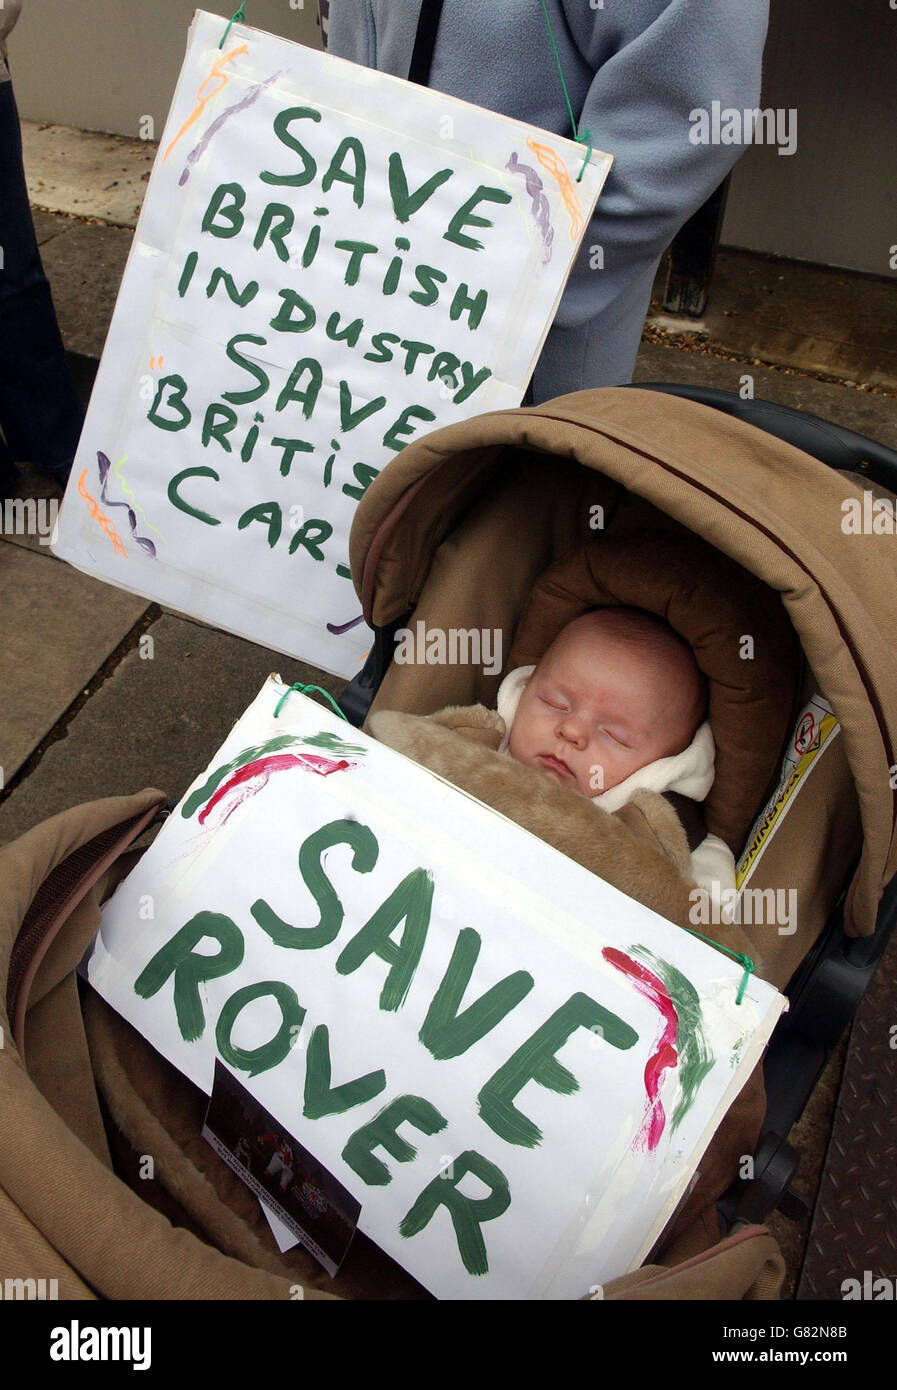 Jason Pearson di nove settimane con un banner a Whitehall, incoraggiando Tony Blair ad aiutare i dipendenti della società automobilistica Rover. Foto Stock